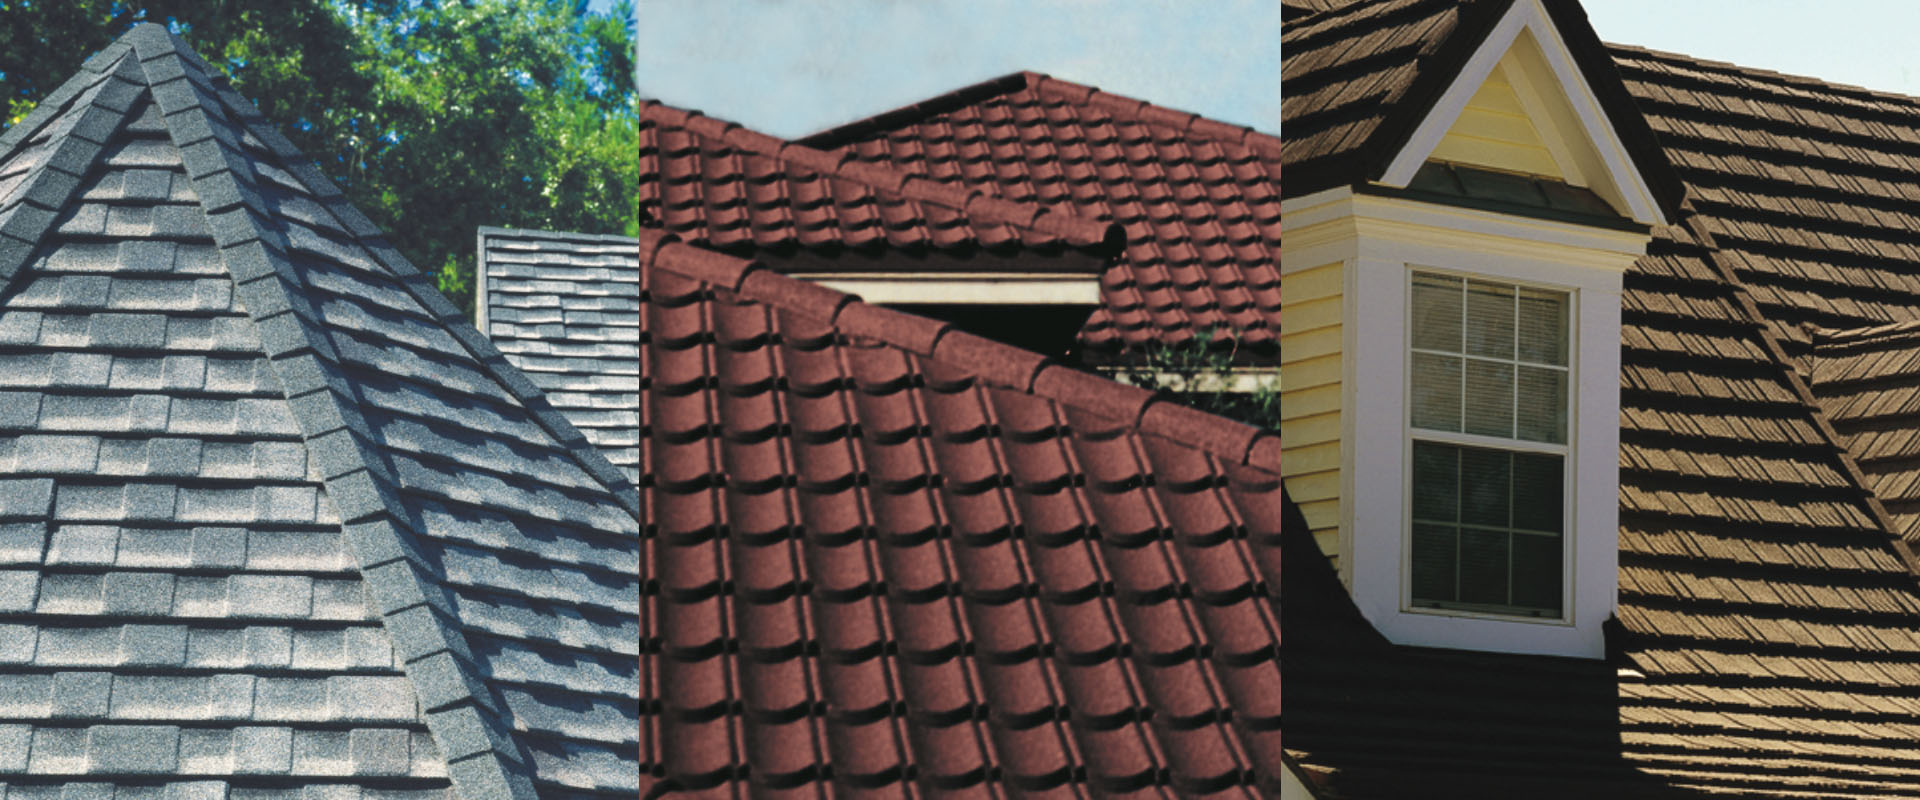 Image de 3 toits en asphalte gris, rouge et jaune